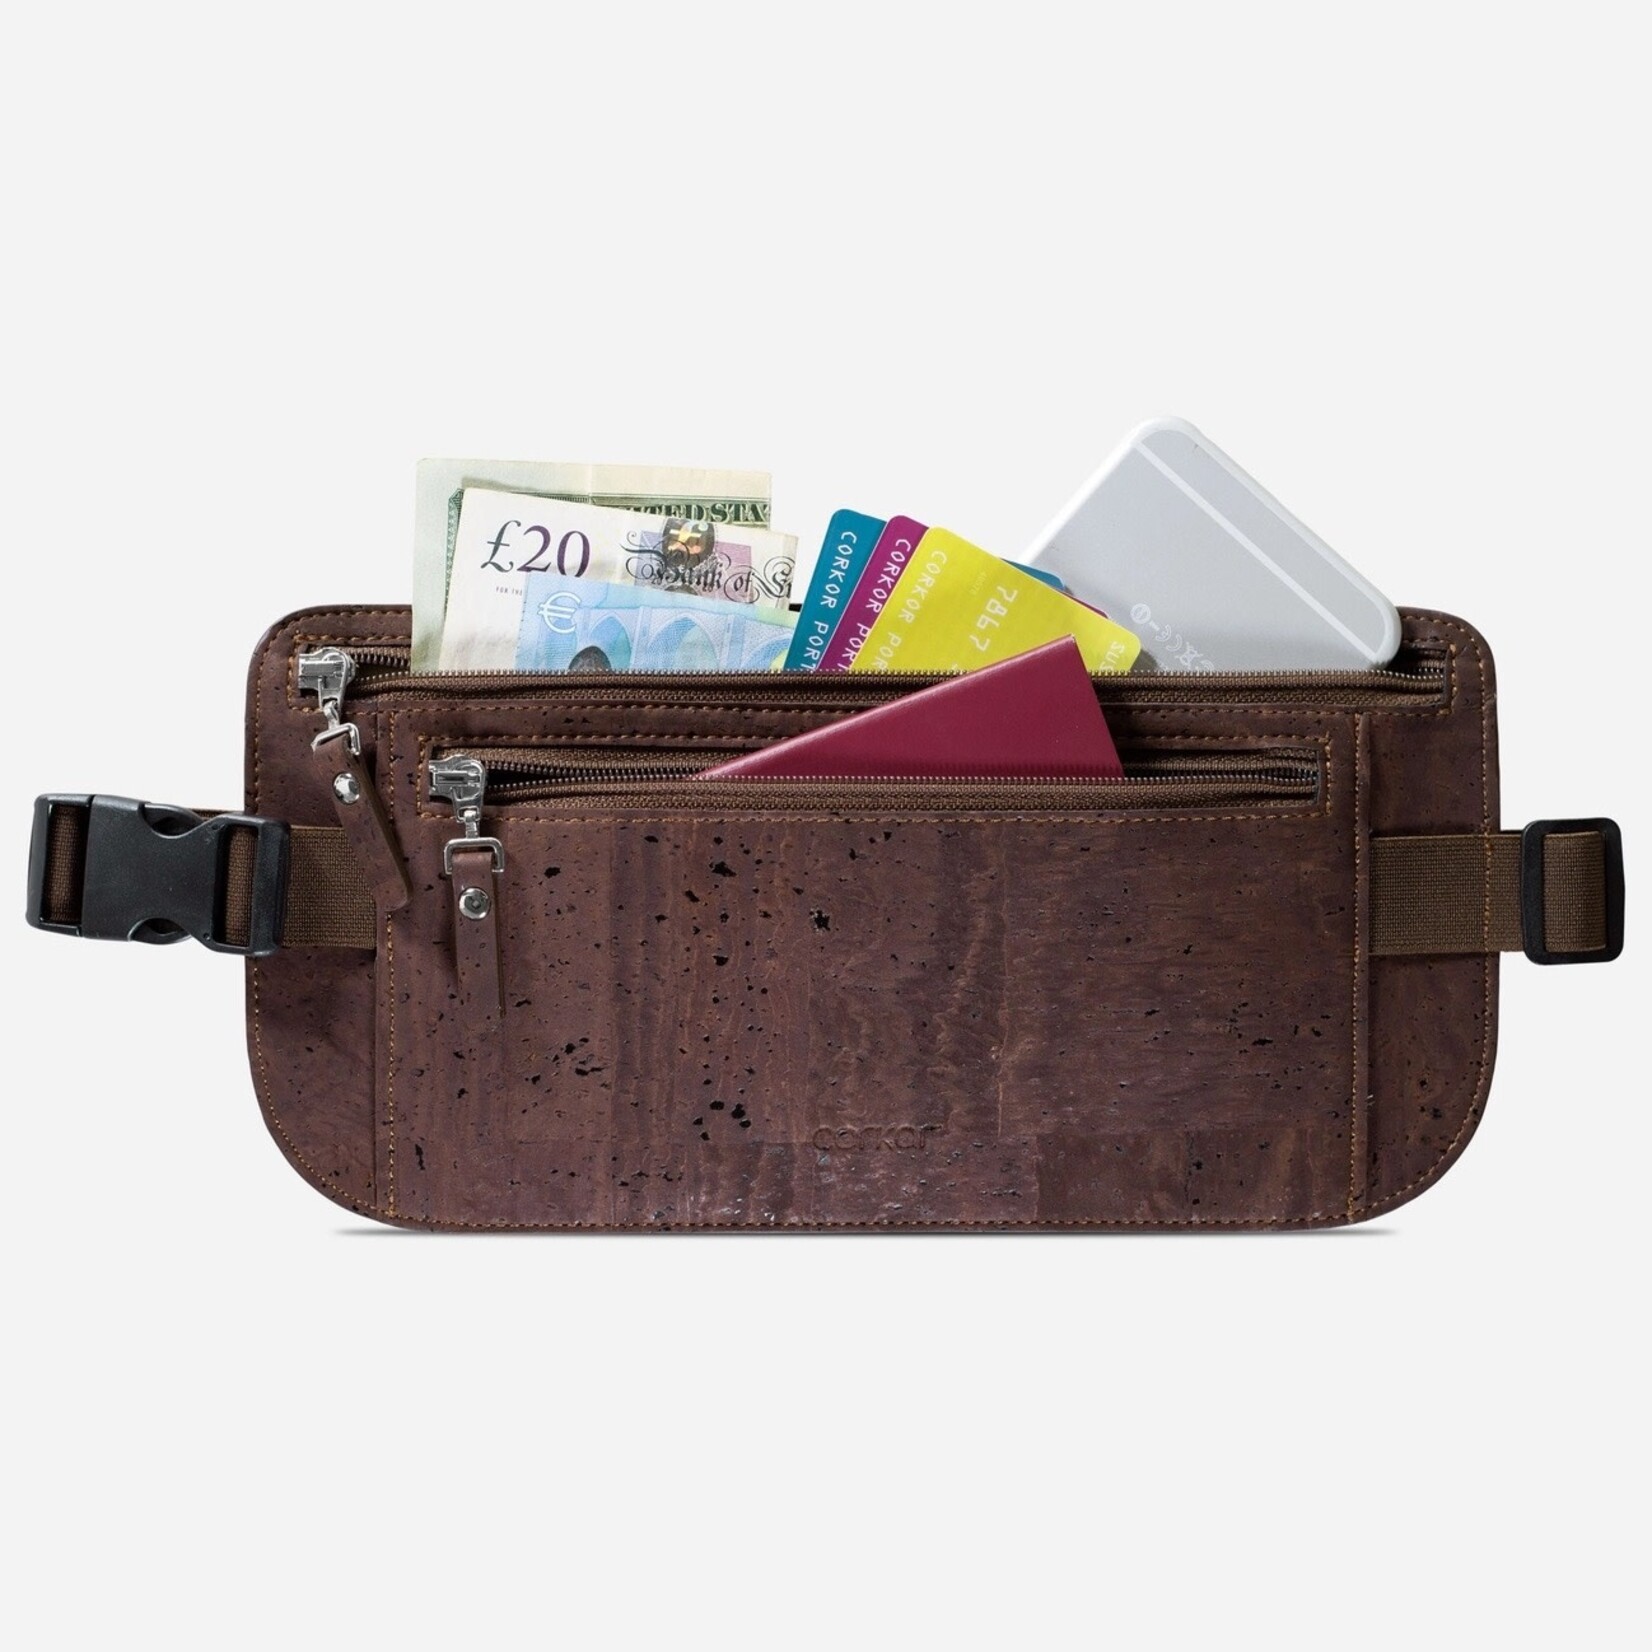 Corkor Travel Money Belt Slim Passport Holder - Brown